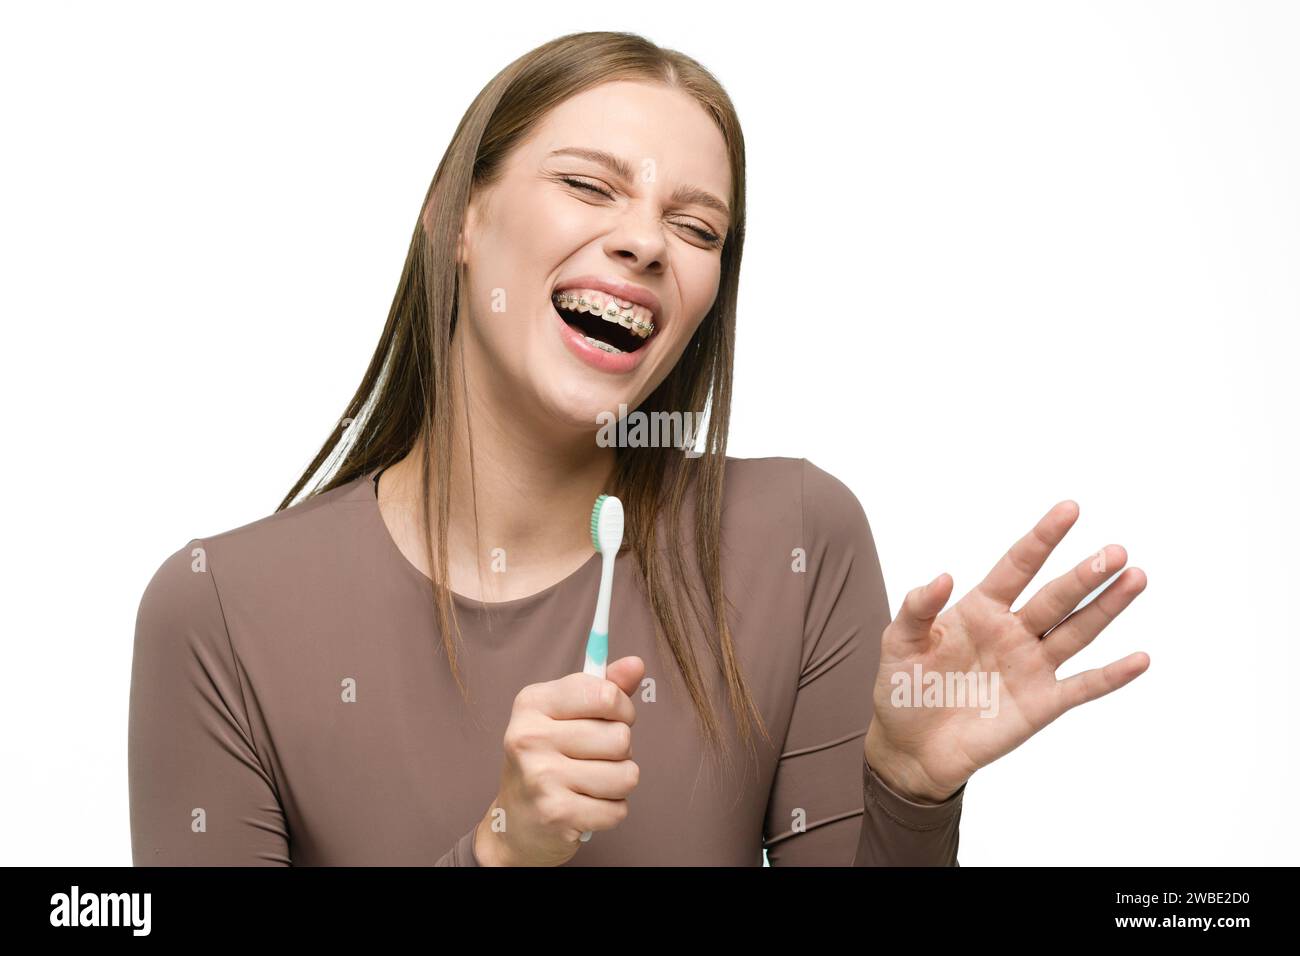 Jeune belle femme chantant à brosse à dents isolé sur fond blanc. La fille sourit largement montrant de belles dents droites avec des bagues. Banque D'Images